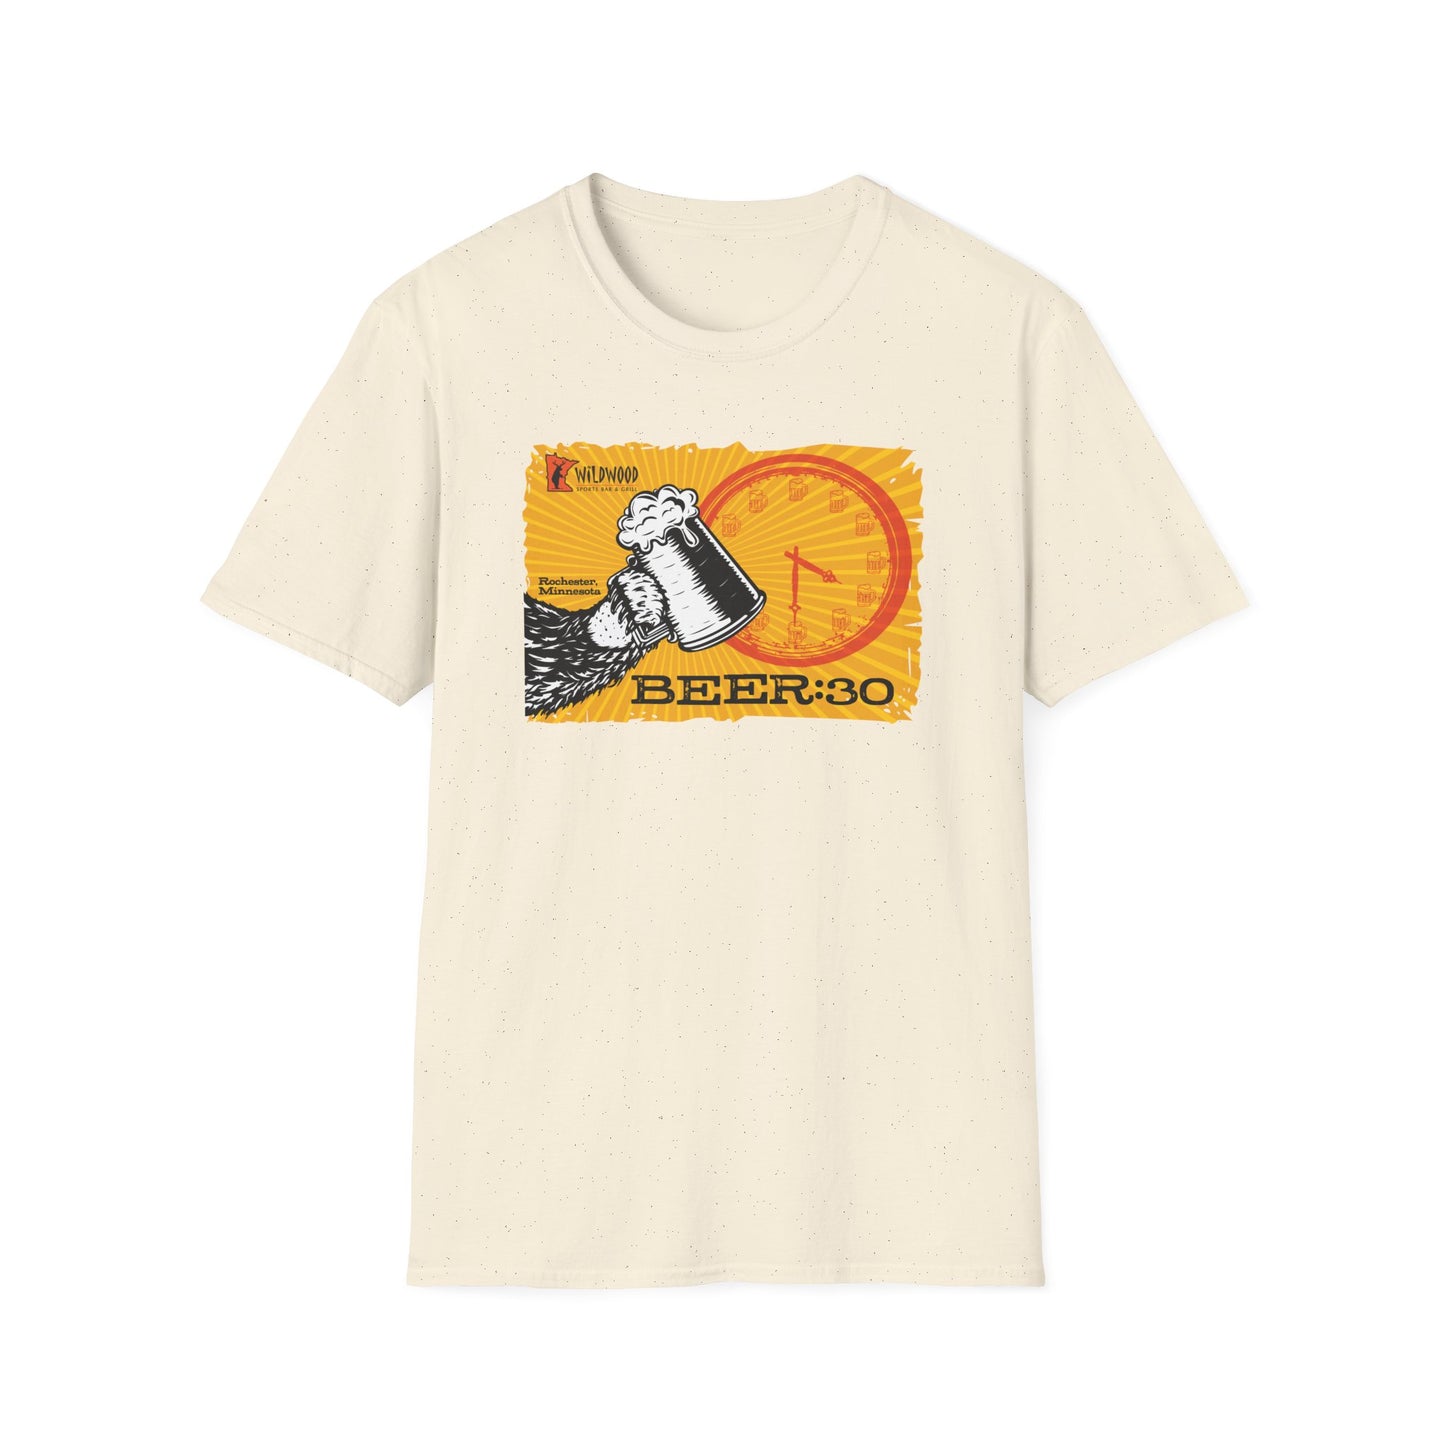 Wildwood Beer:30 Cotton T-shirt